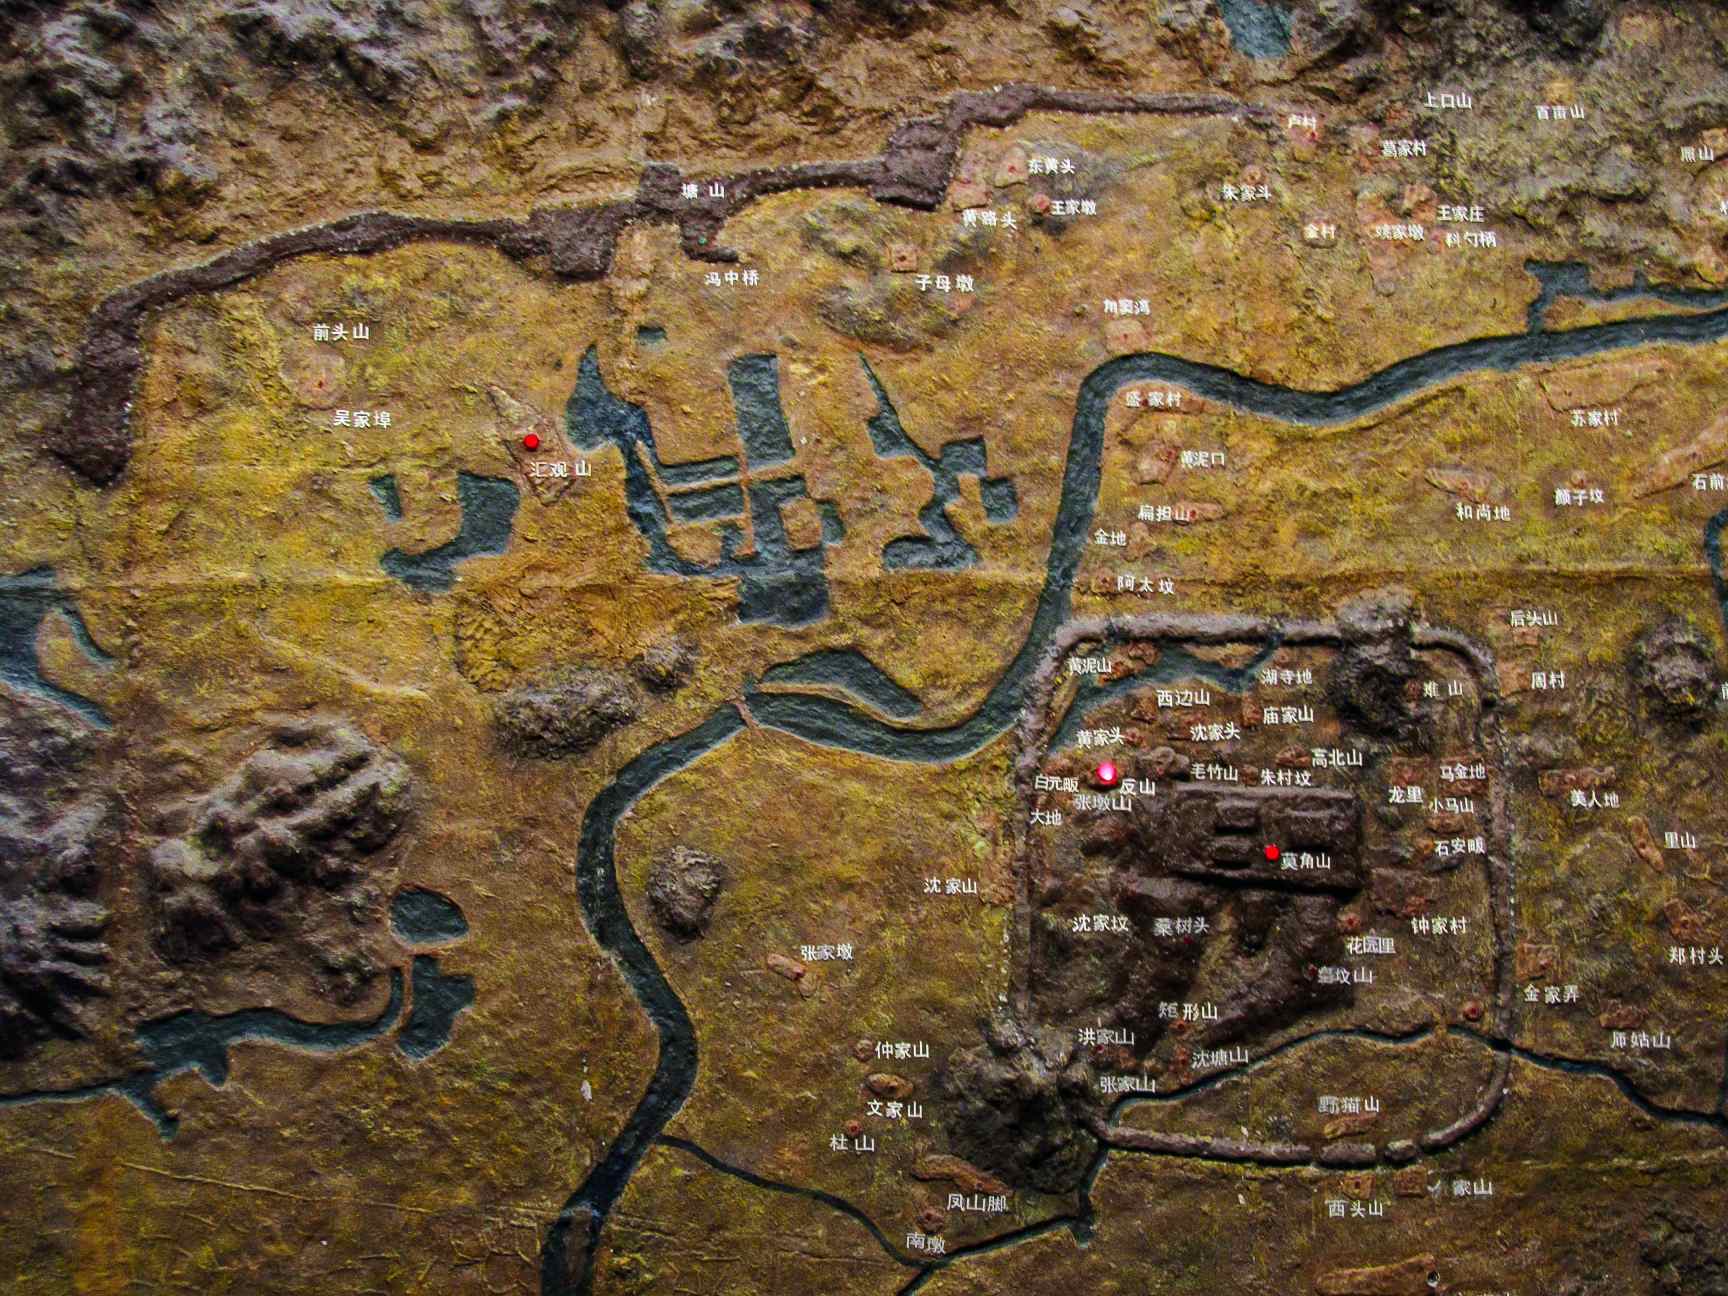 Modell av den antika staden Liangzhu, som visas i Liangzhu-museet.